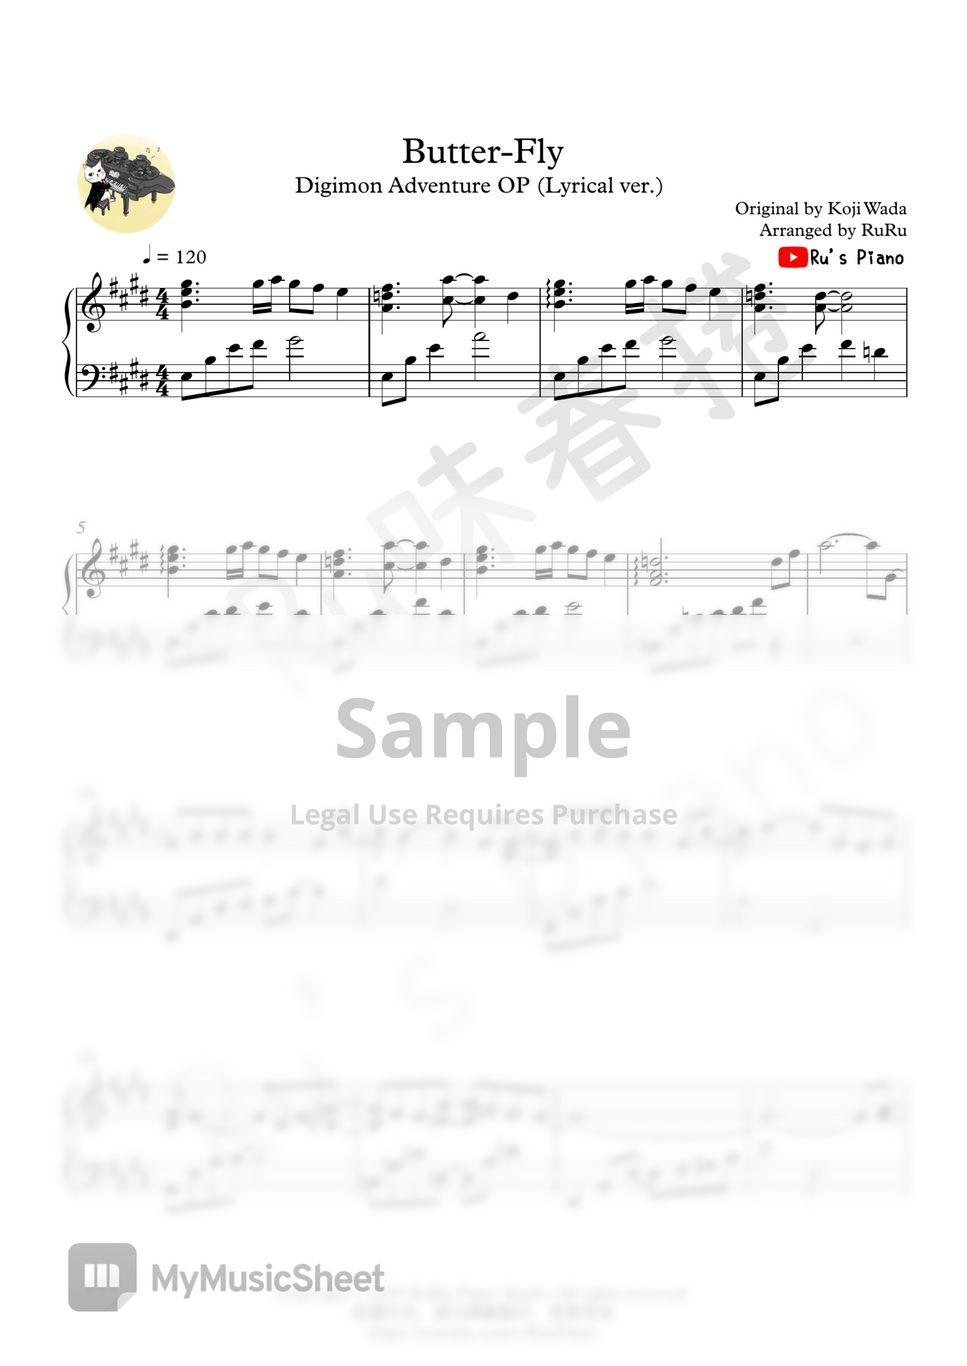 デジモンアドベンチャー Digimon Adventure OP1 - Butter-Fly (Lyrical ver.) by Ru's Piano